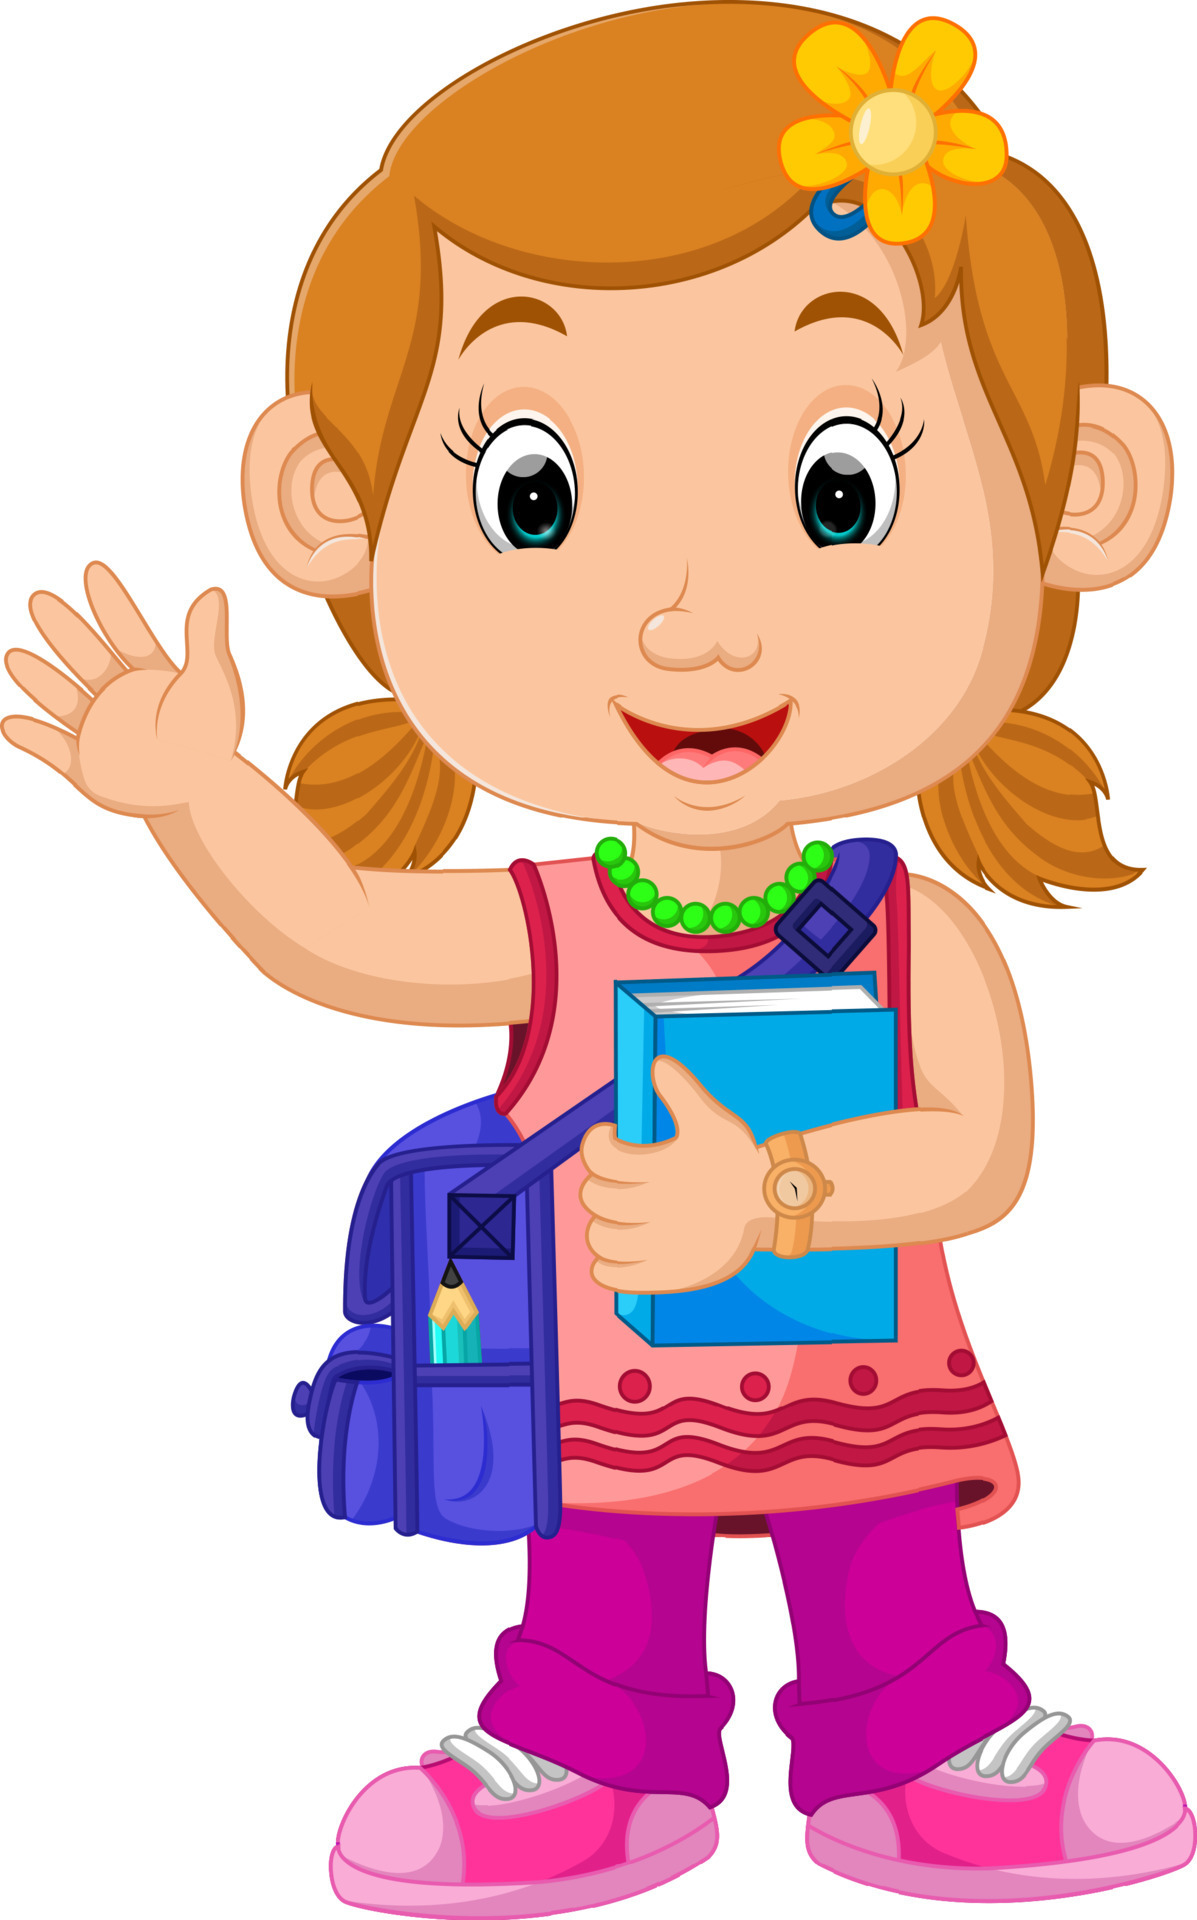 School girl cartoon walking 8020572 Vector Art at Vecteezy